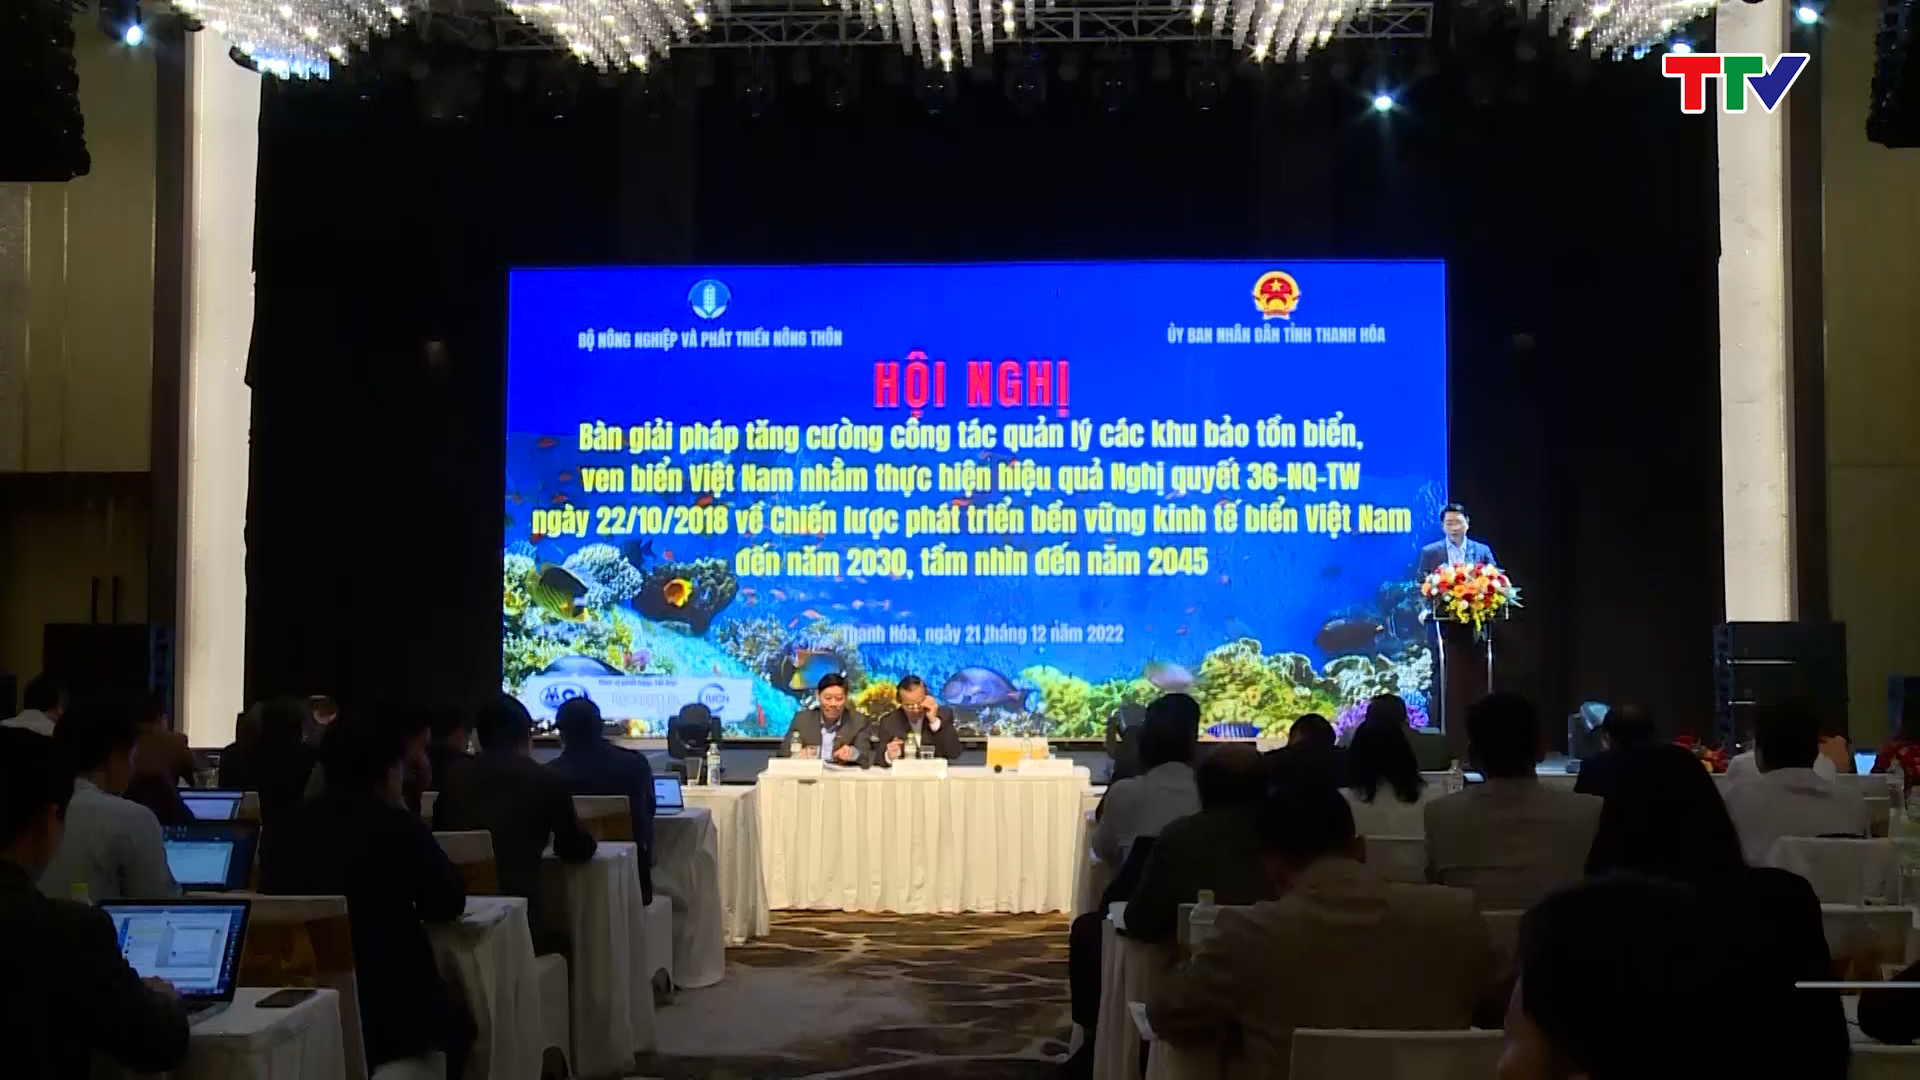 Việt Nam sẽ tiếp tục tăng cường công tác quản lý các khu bảo tồn biển, ven biển - Ảnh 1.